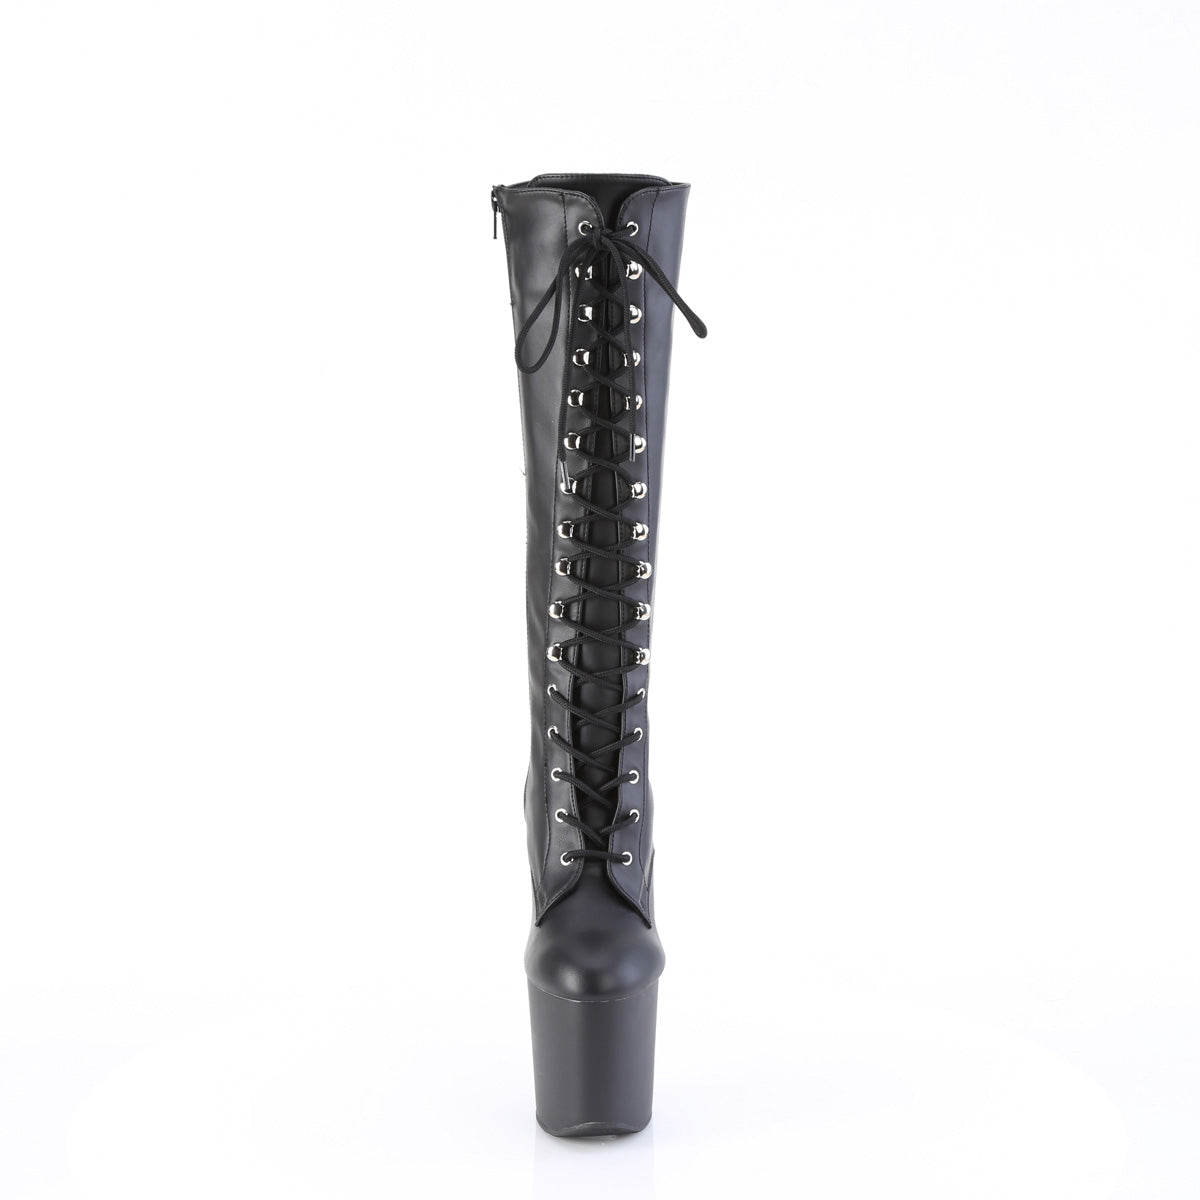 CRAZE-2023 Pleaser Black Stretch Faux Leather/Black Matte Platform Shoes [Kinky Boots]